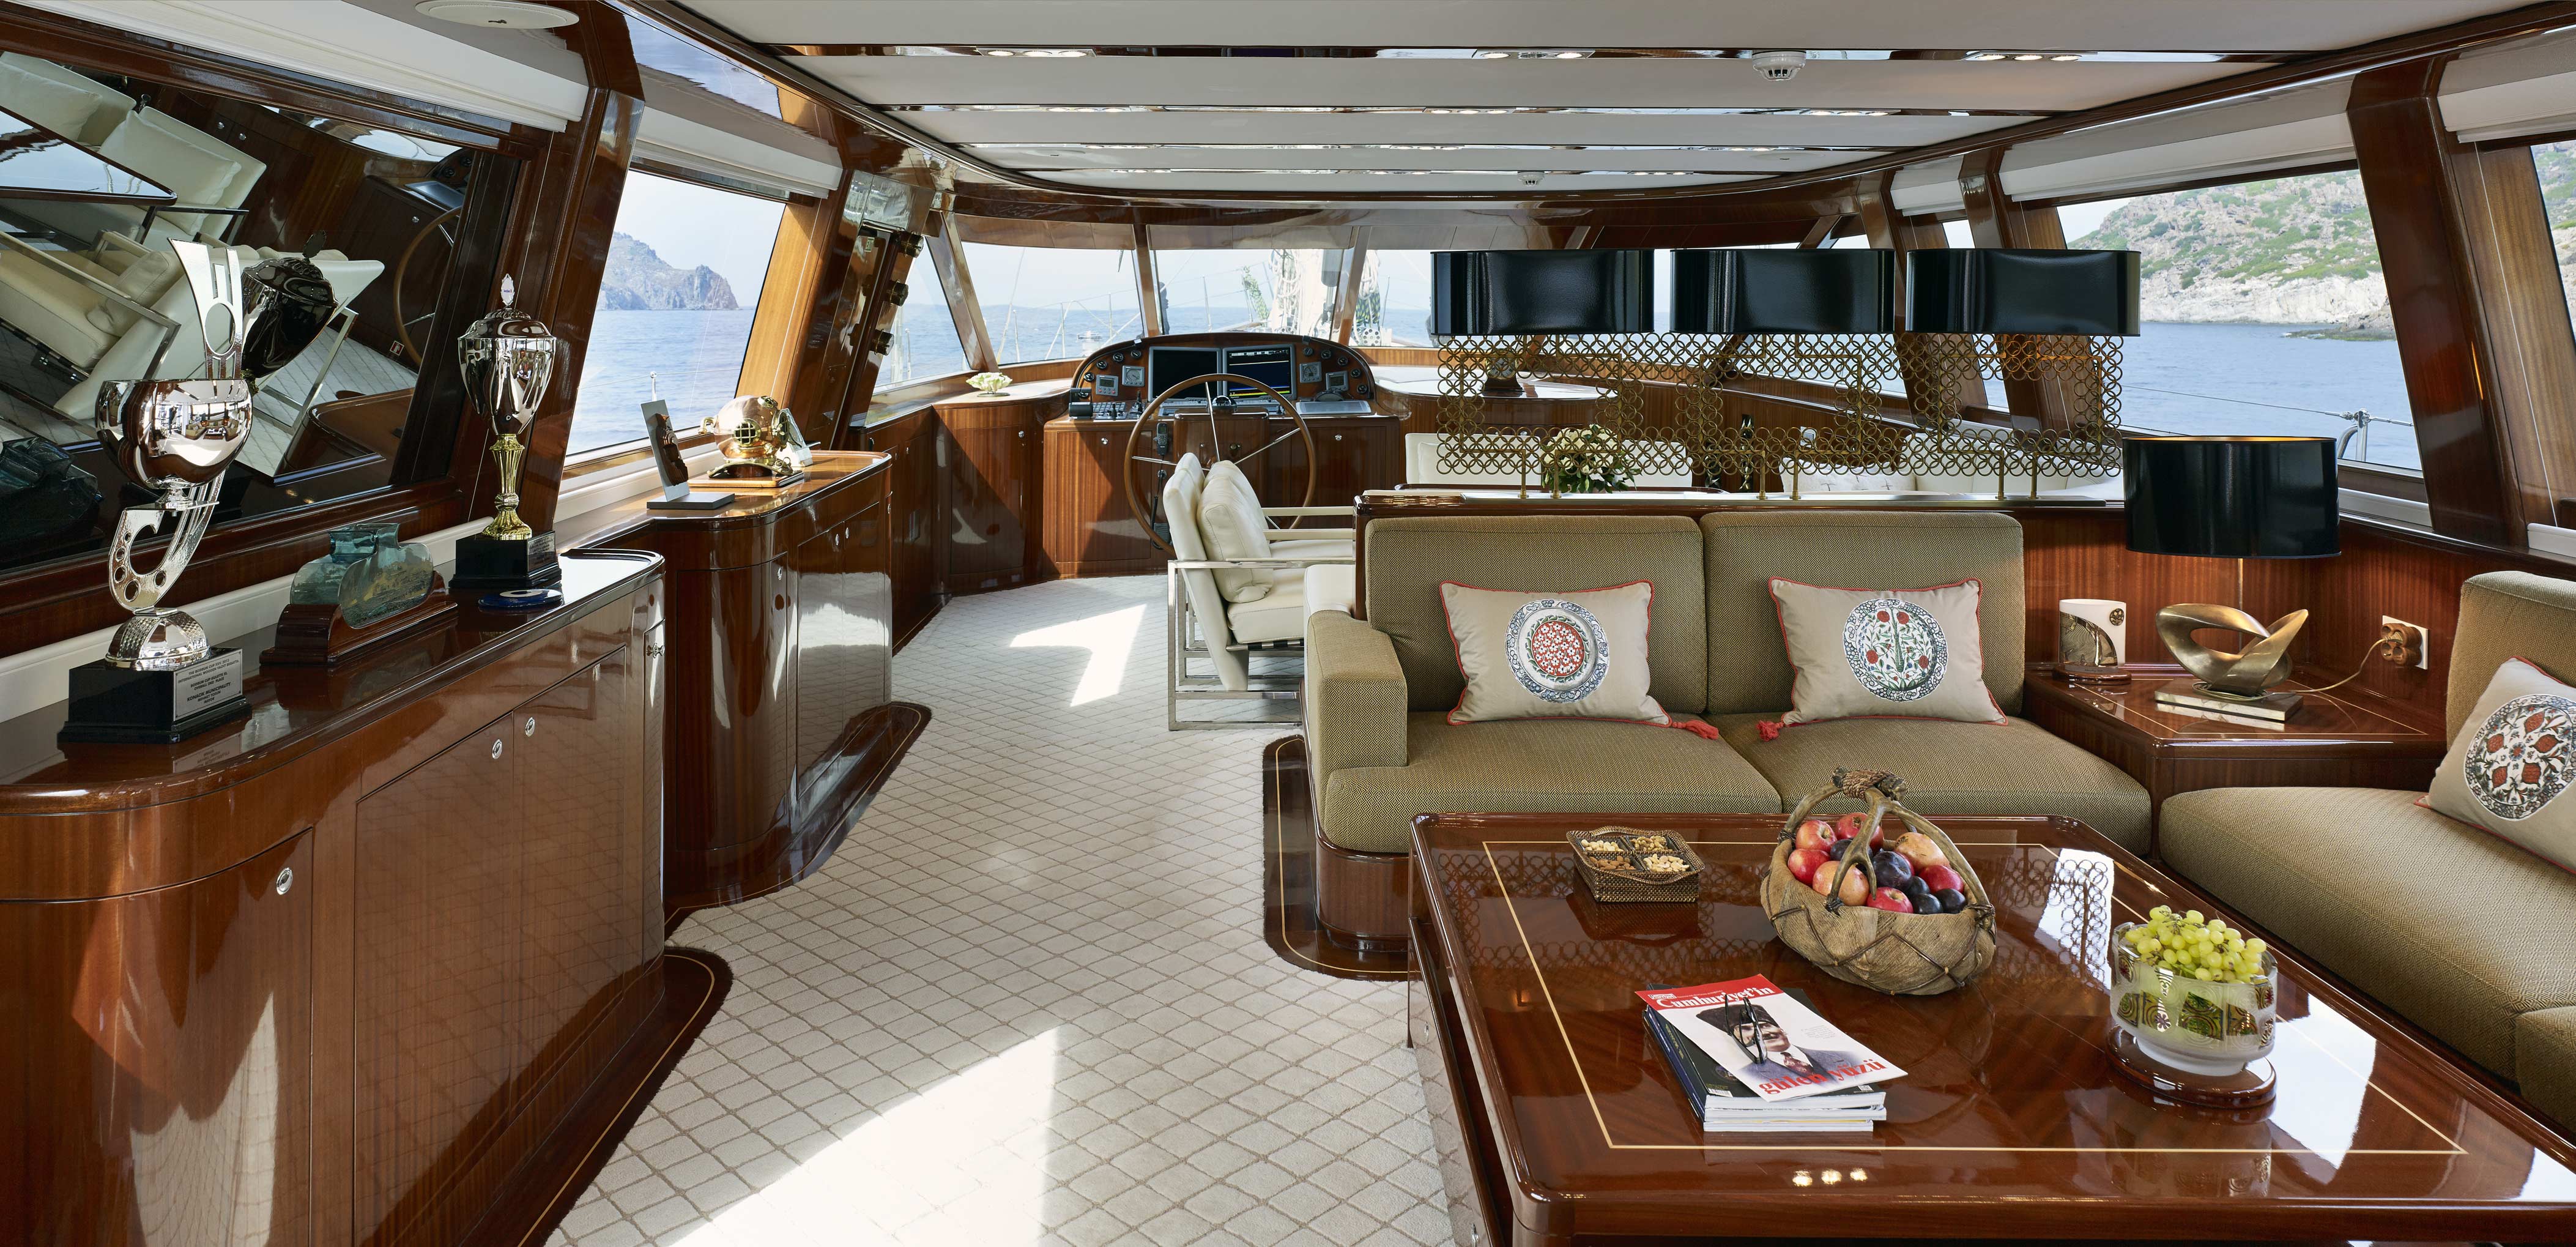 luxus yacht interior